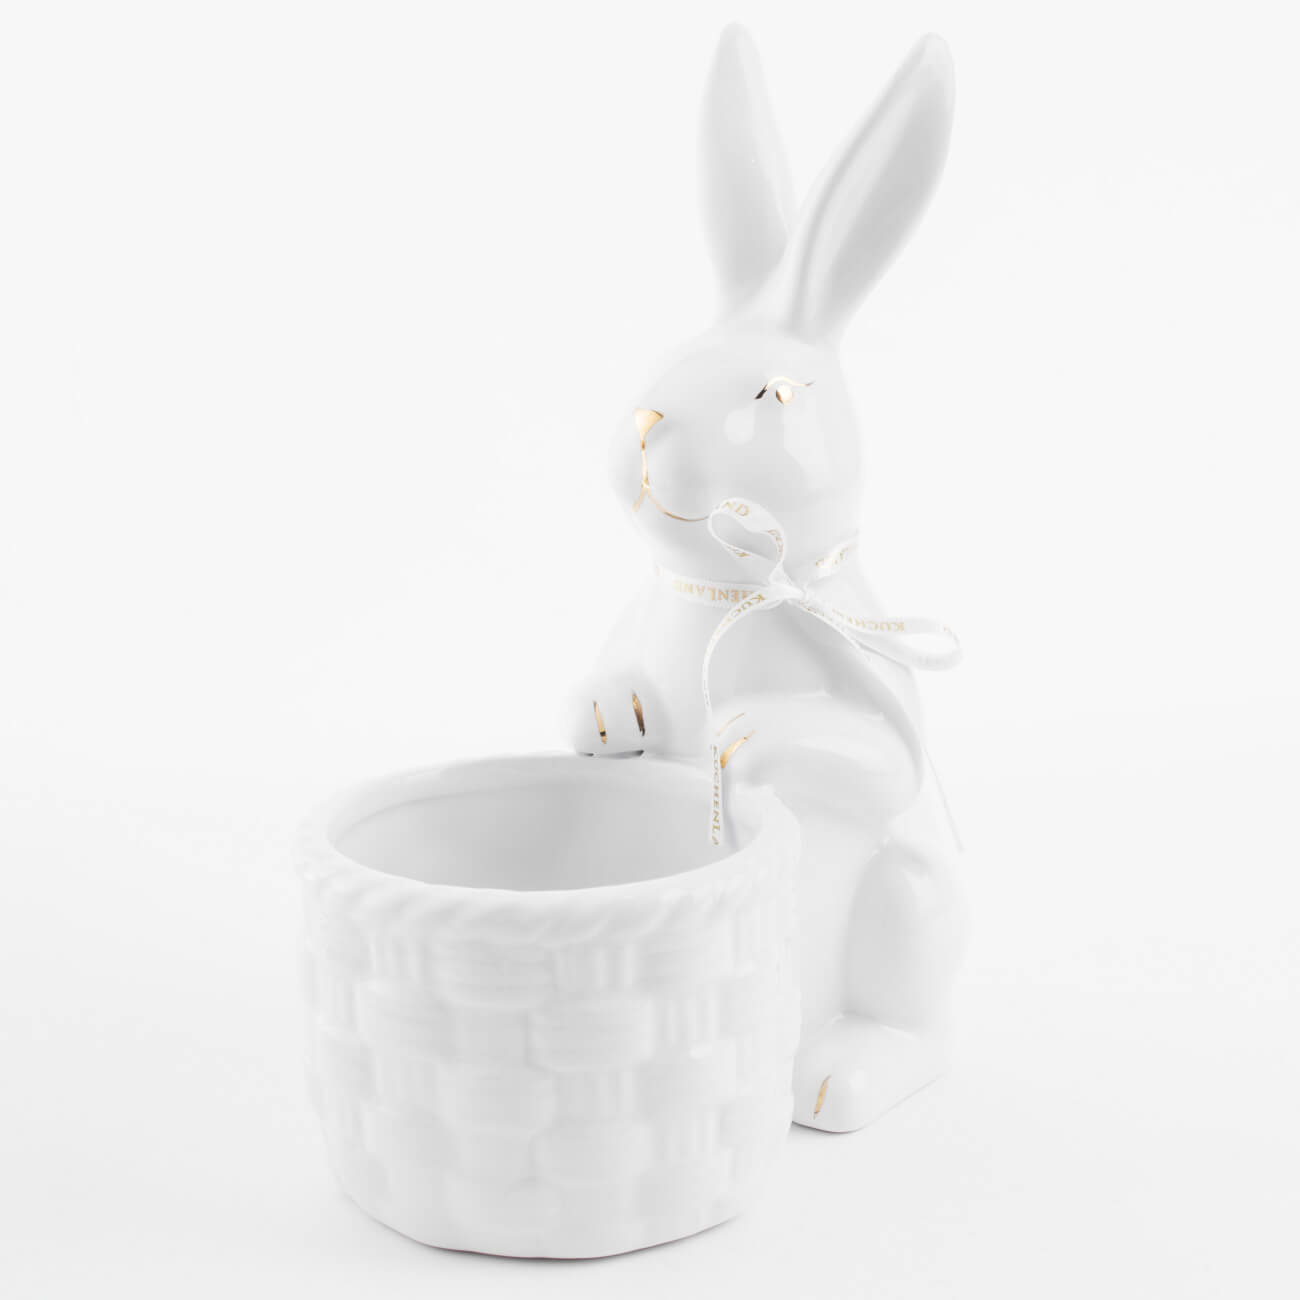 Конфетница, 18x23 см, керамика, бело-золотистая, Кролик с плетенной корзиной, Easter gold конфетница на ножке 17х11 см фарфор porcelain бело бежевая крольчонок в вазе natural easter